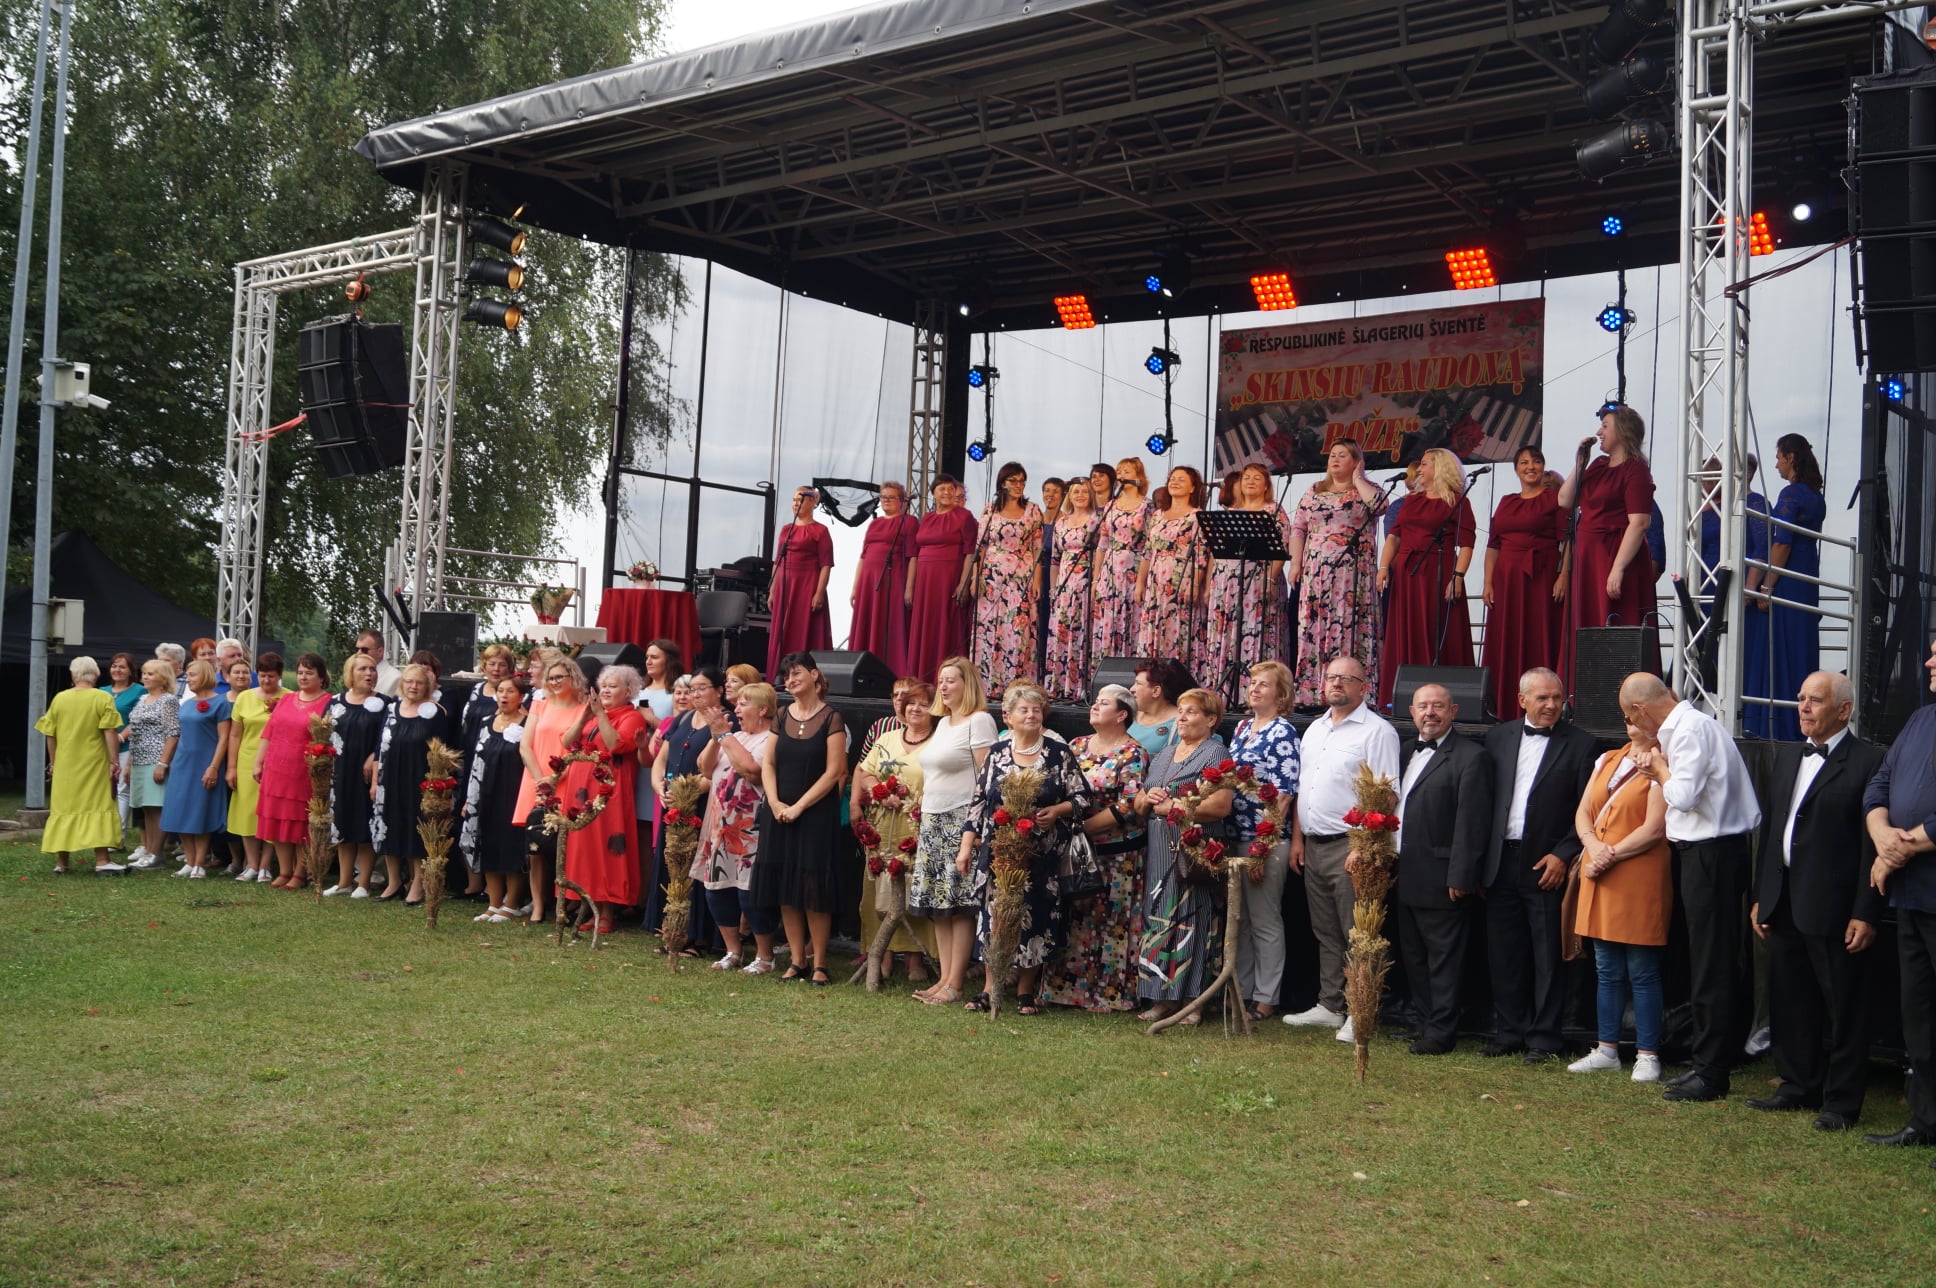 Jurbarko kultūros centro dainininkės dalyvavo respublikinėje šlagerių šventėje Raseiniuose 